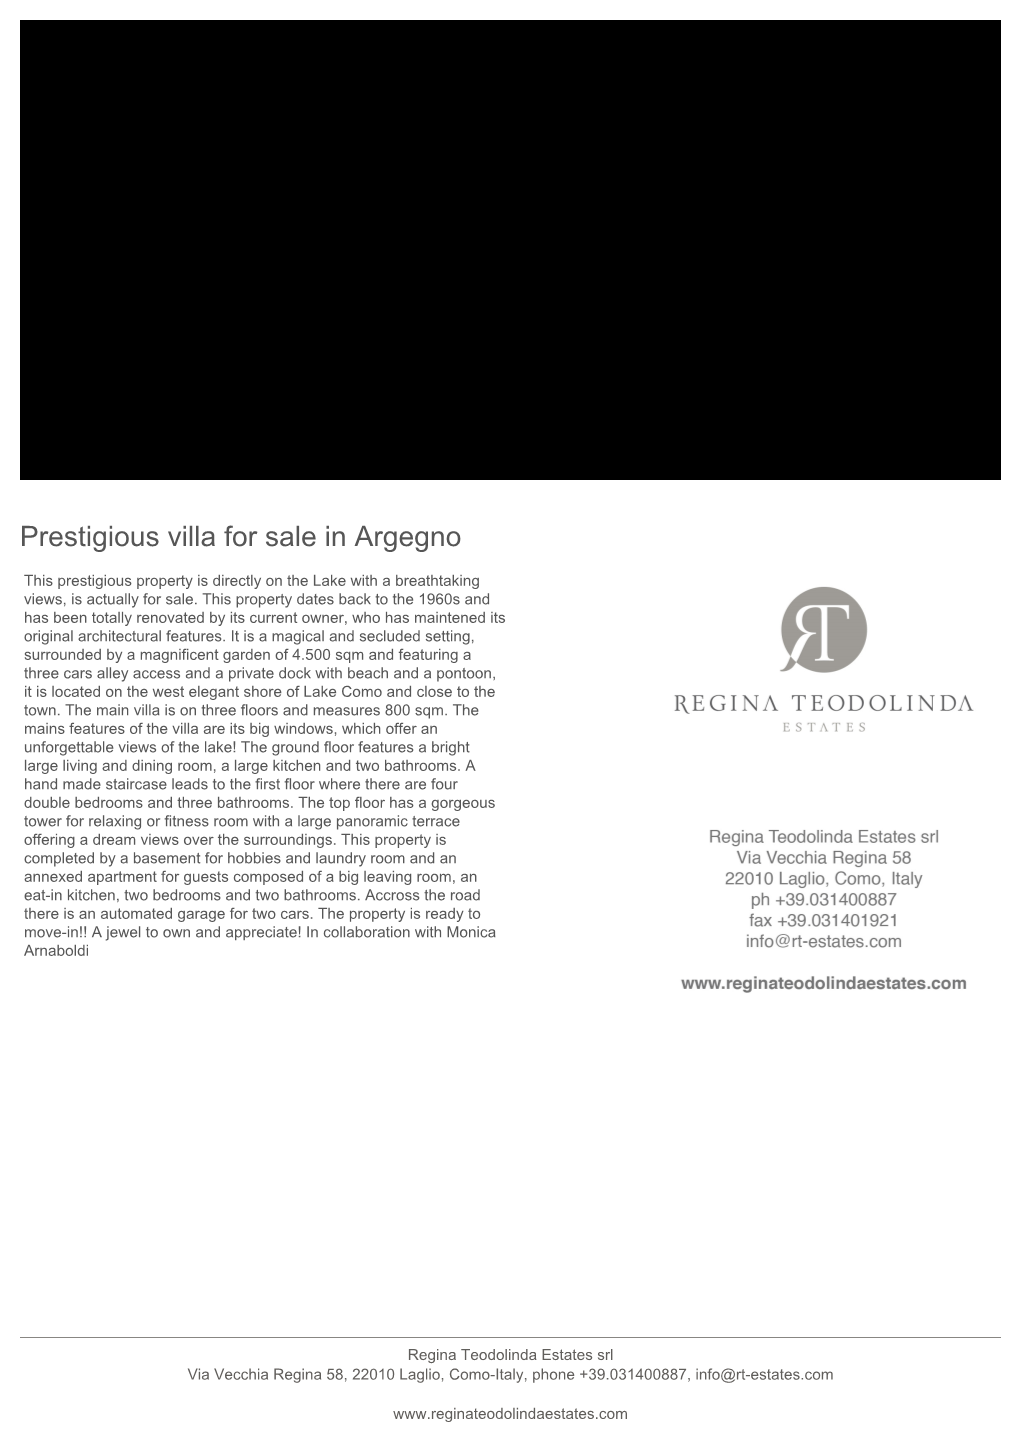 Prestigious Villa for Sale in Argegno